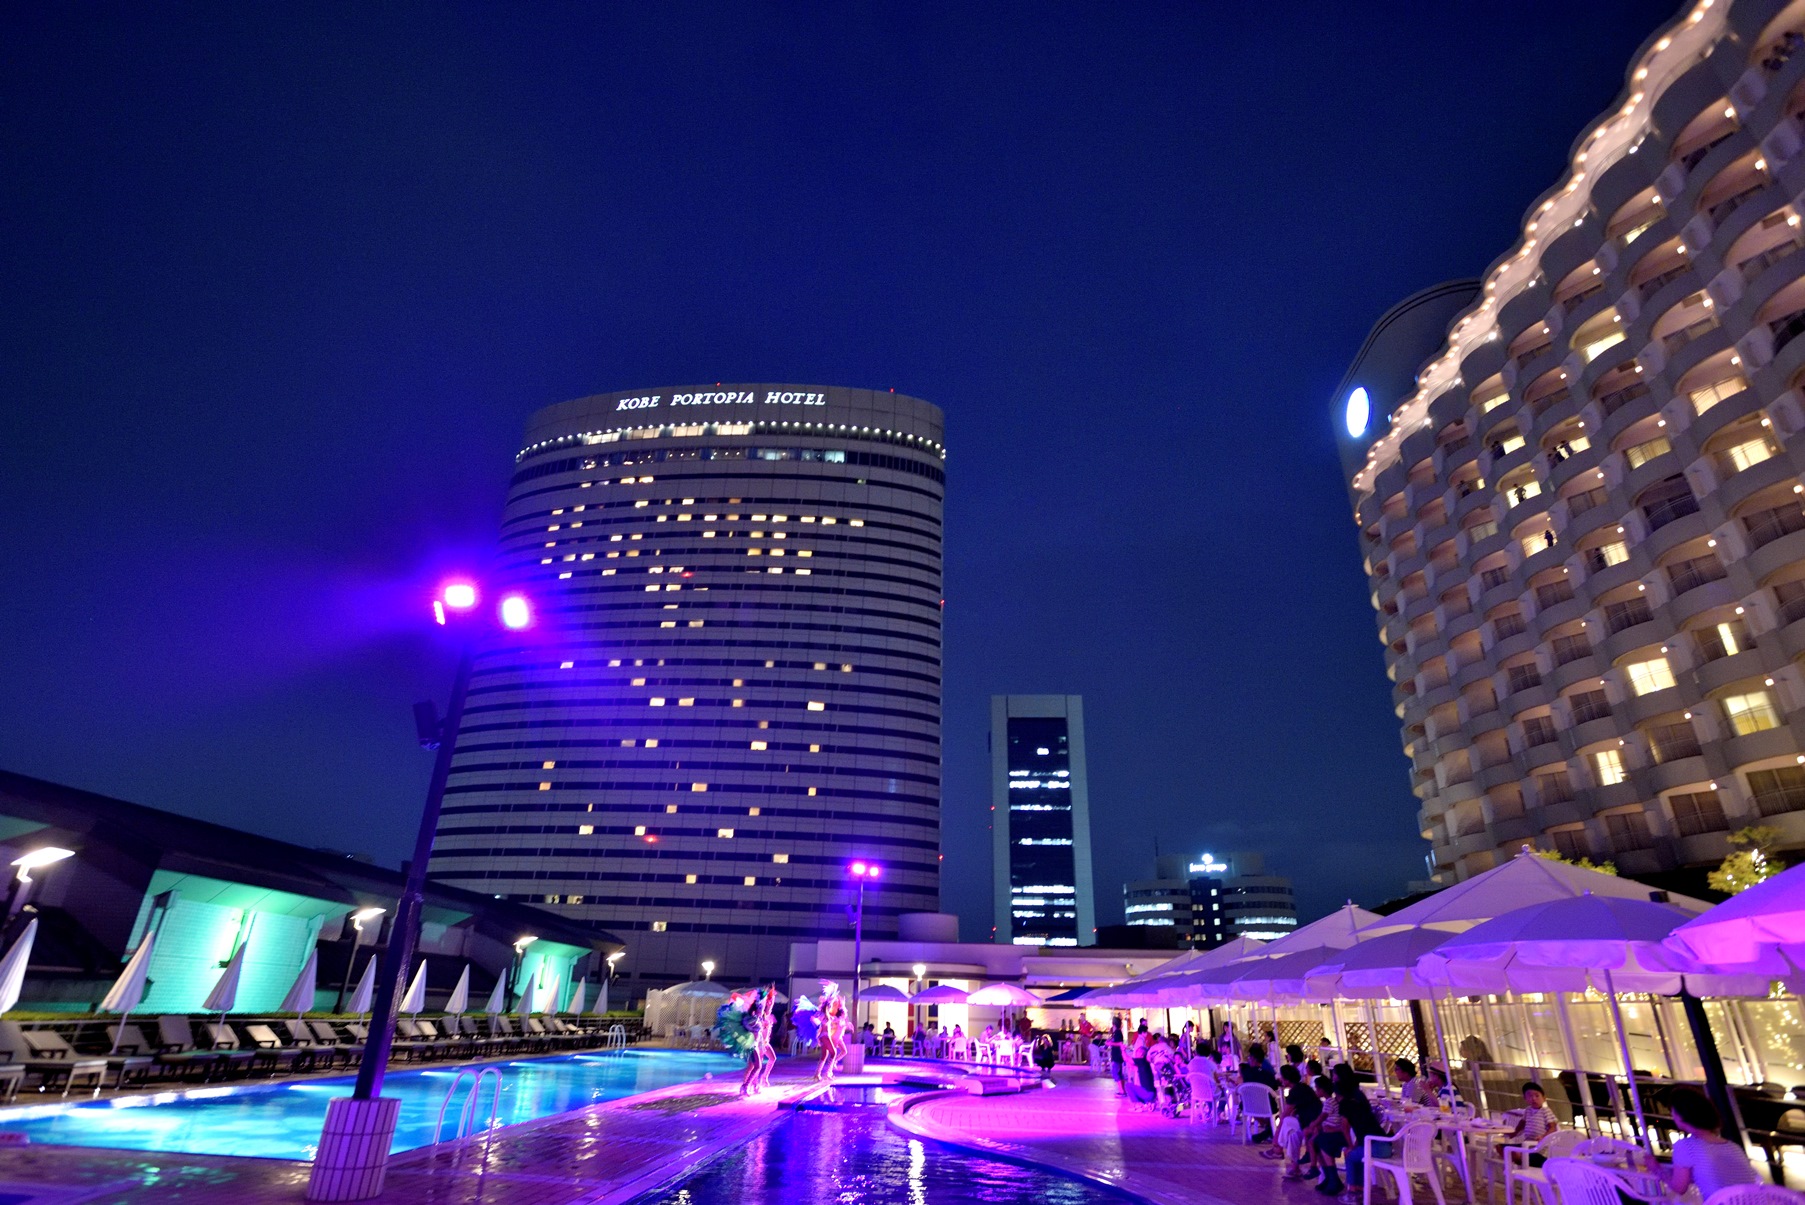 ホテルのプールで楽しむ 大人の夜遊び ポートピアナイトプール 19年7月6日 土 Open 株式会社神戸ポートピアホテルのプレスリリース